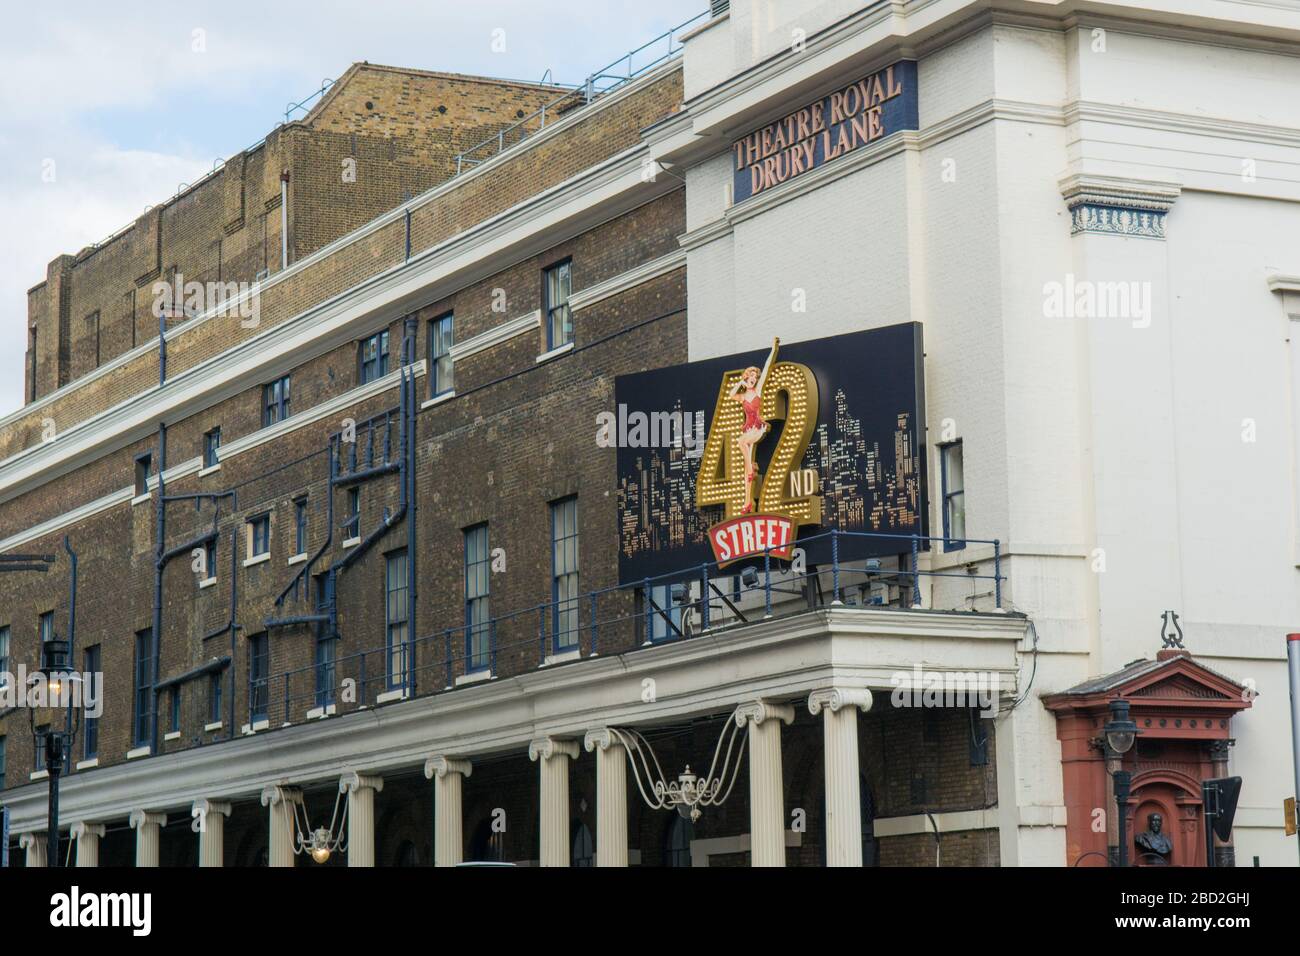 LONDRES- AVRIL 2018 : Théâtre Royal sur Drury Lane, un théâtre du West End jouant actuellement à la comédie musicale américaine, '42ème rue' Banque D'Images